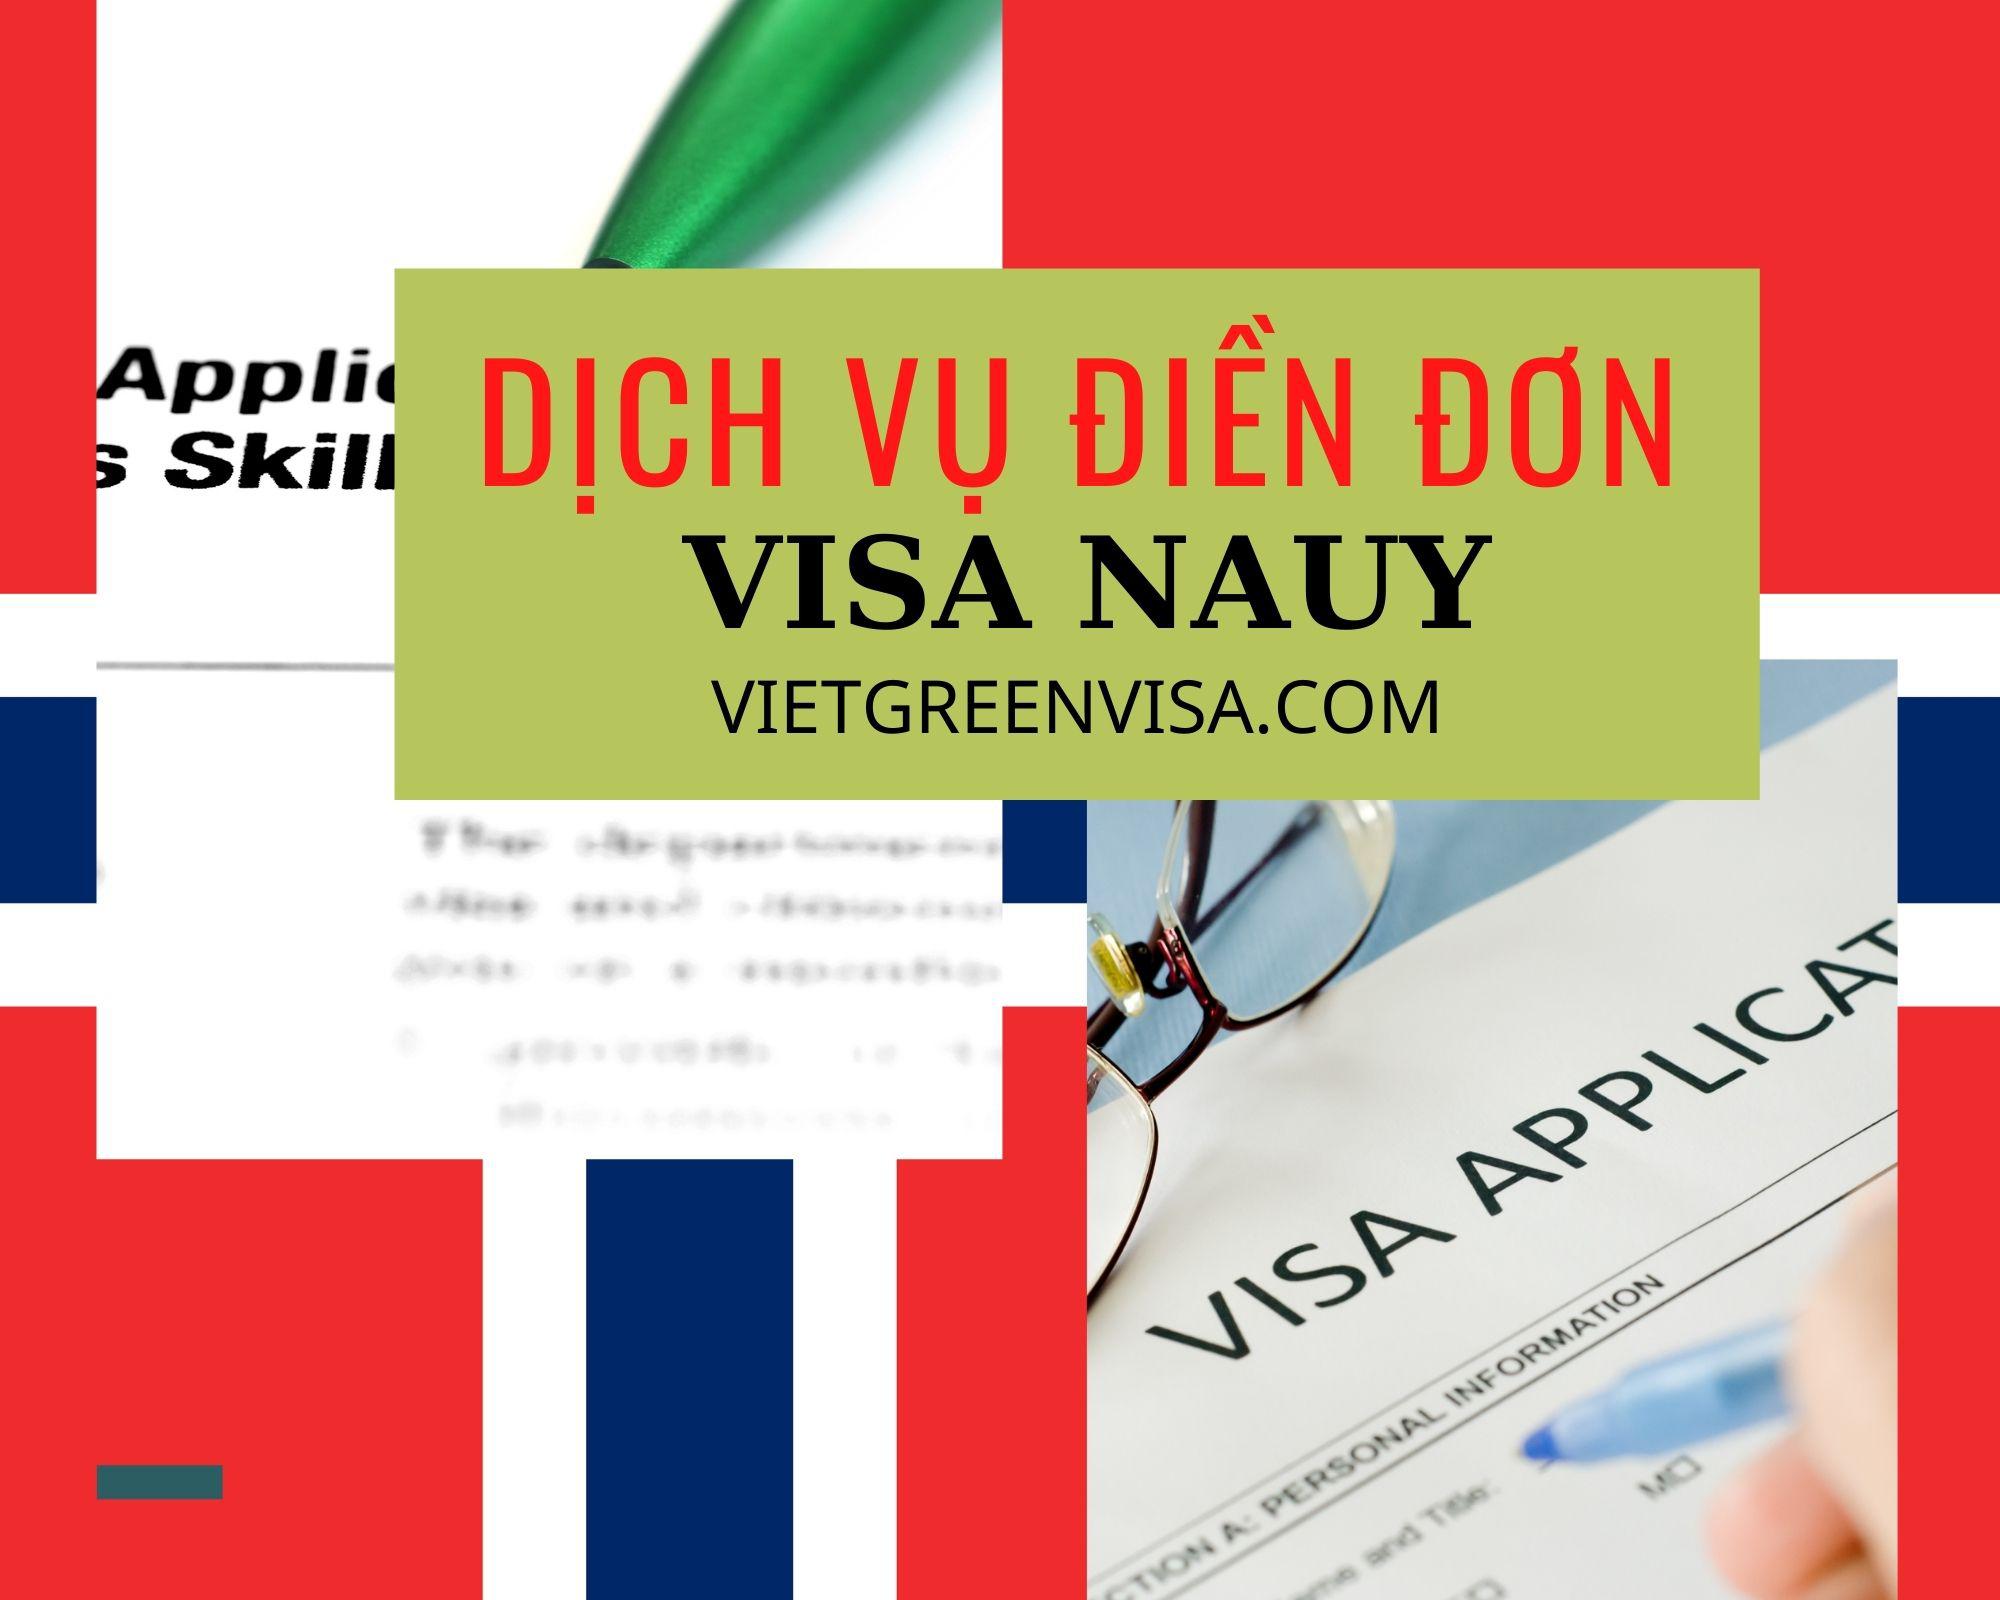 Hỗ trợ điền đơn visa Nauy online nhanh chóng